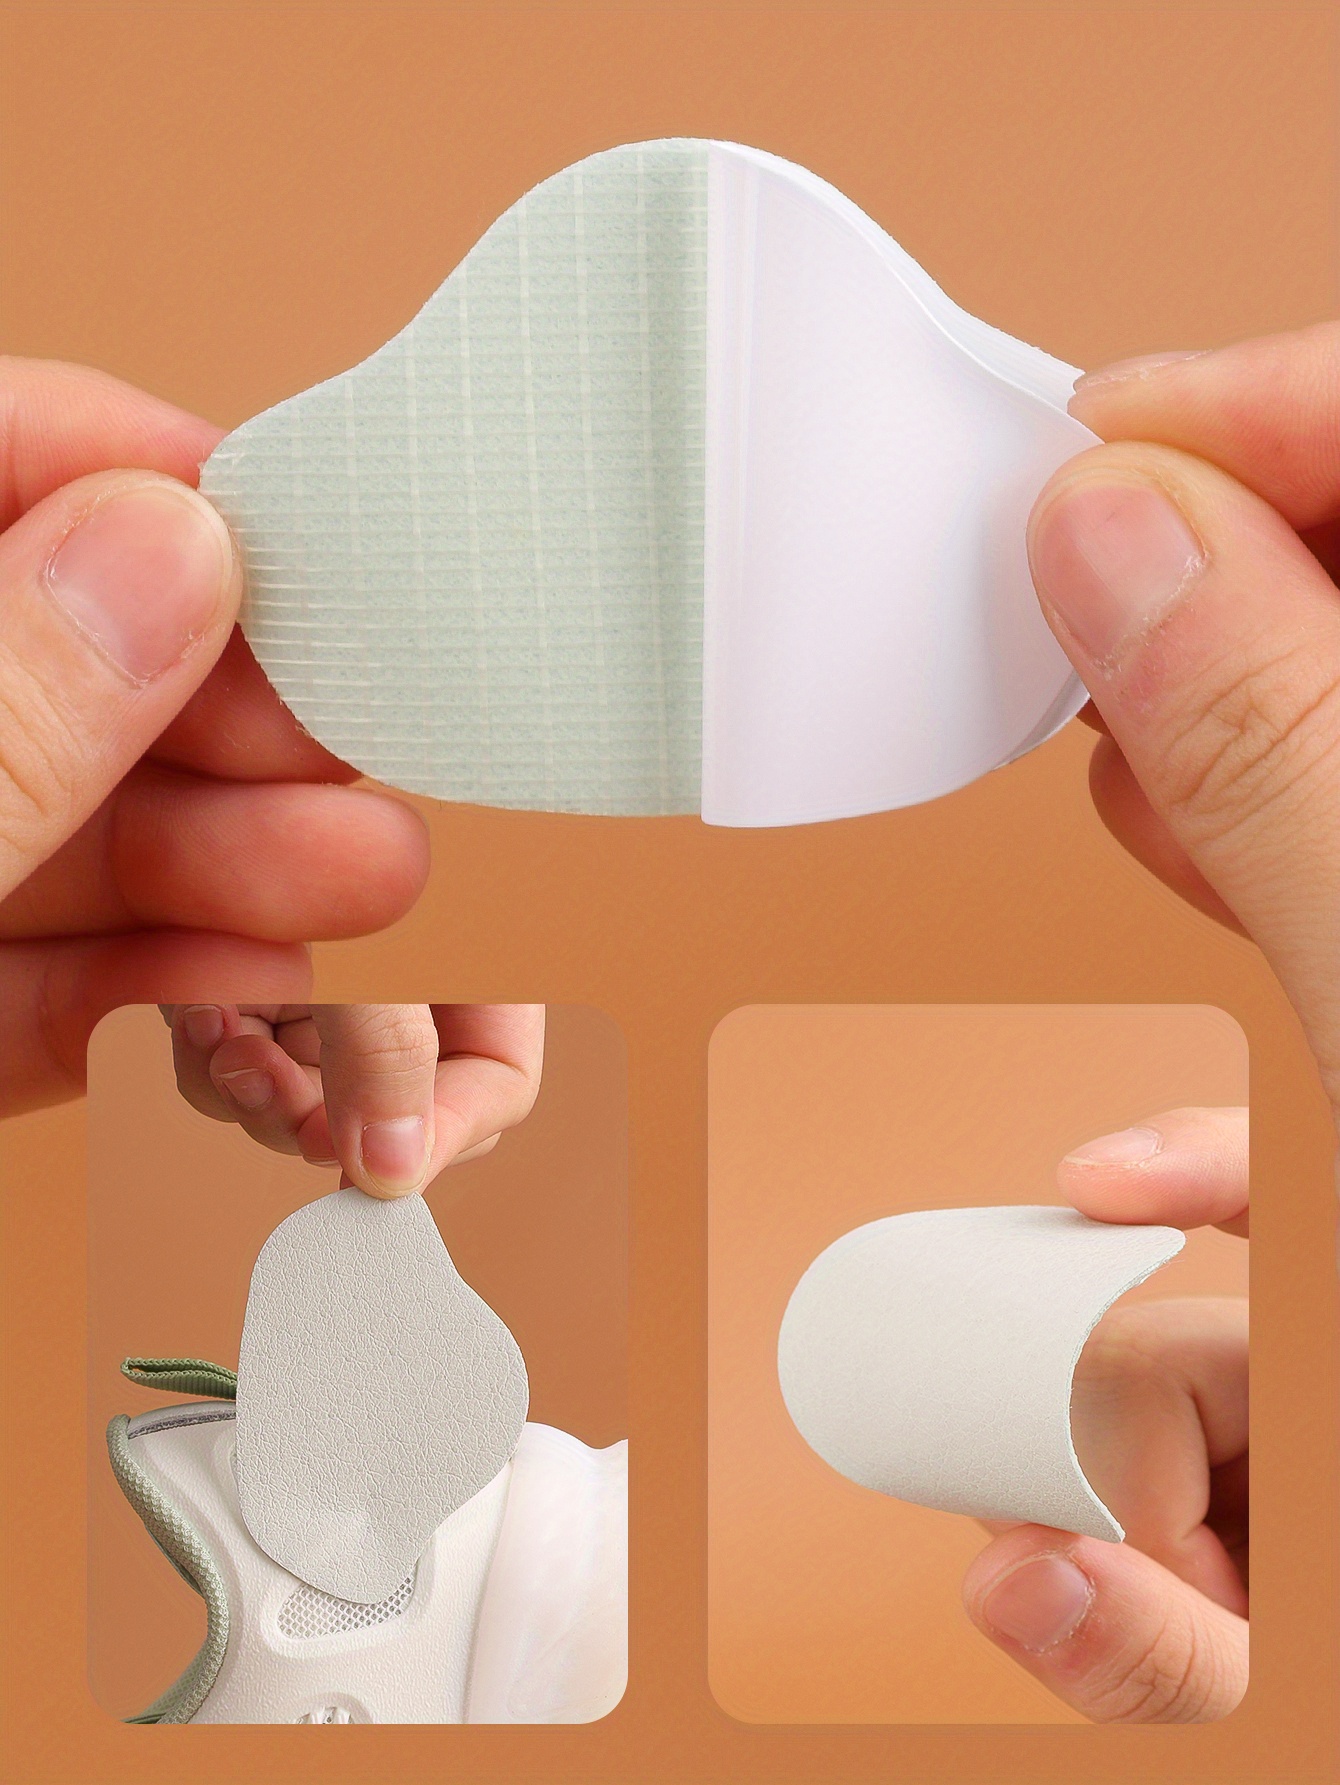 Self adhesive Shoe Hole Repair Patch Kit For Sneakers - Temu